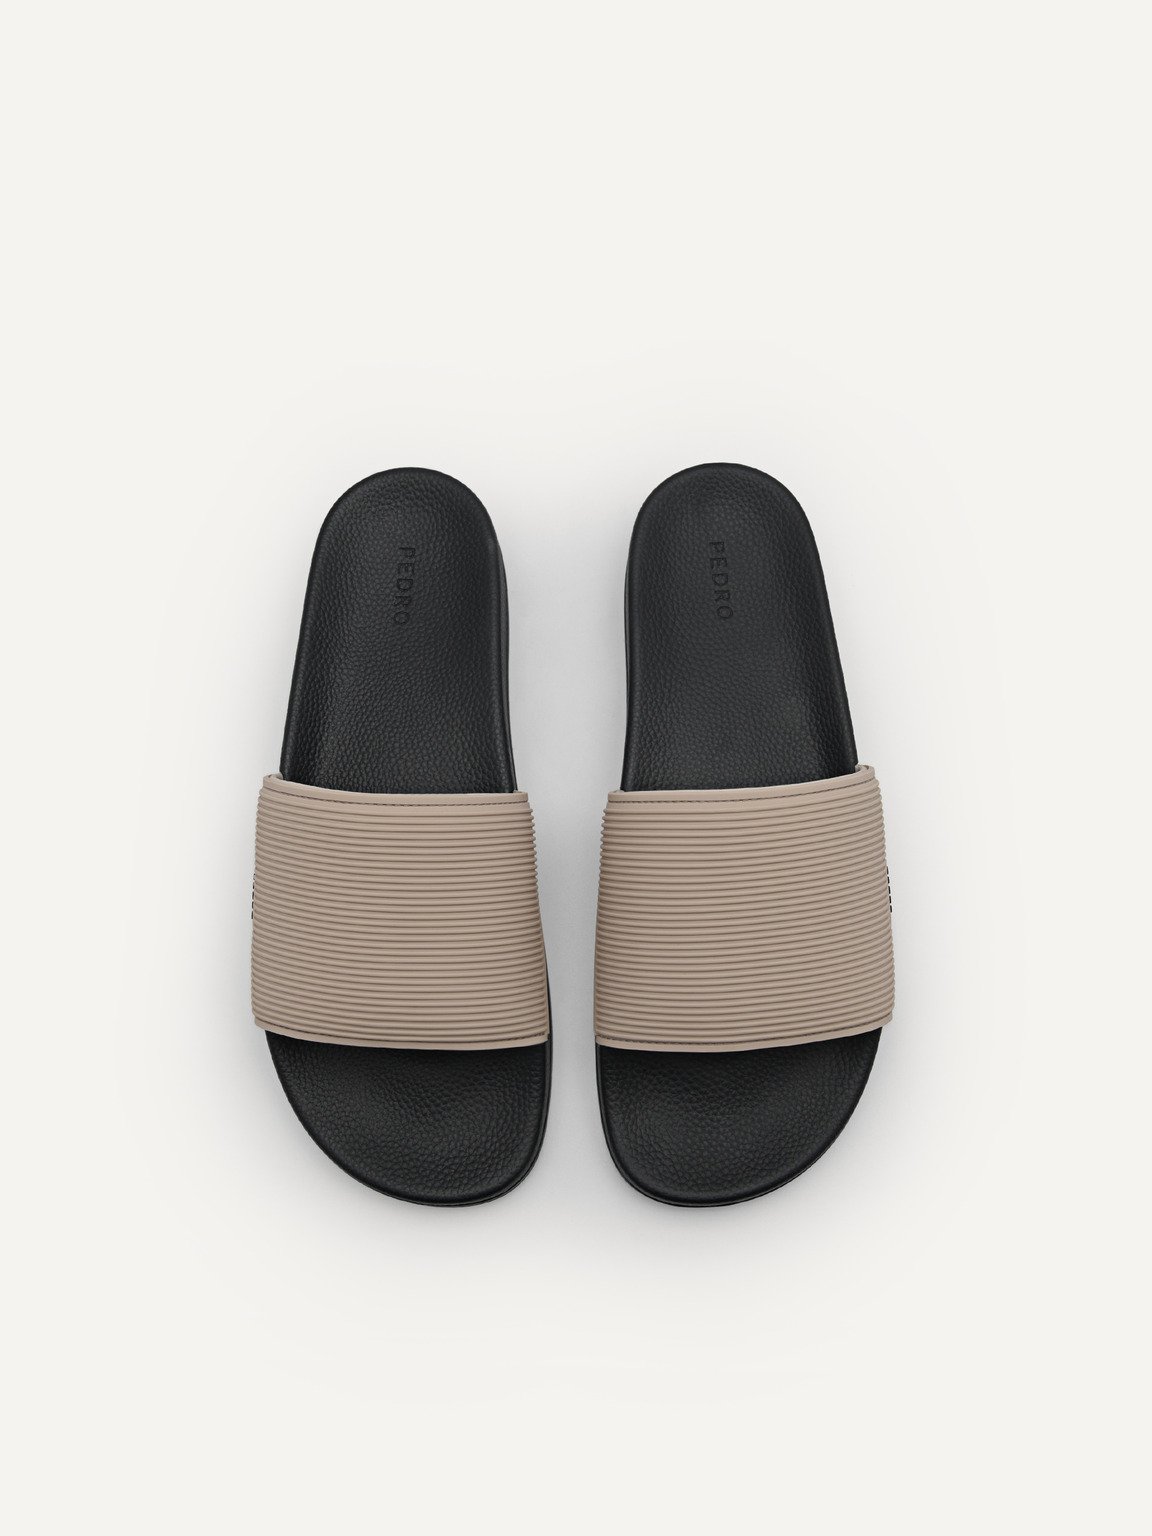 Slide Sandals, Taupe